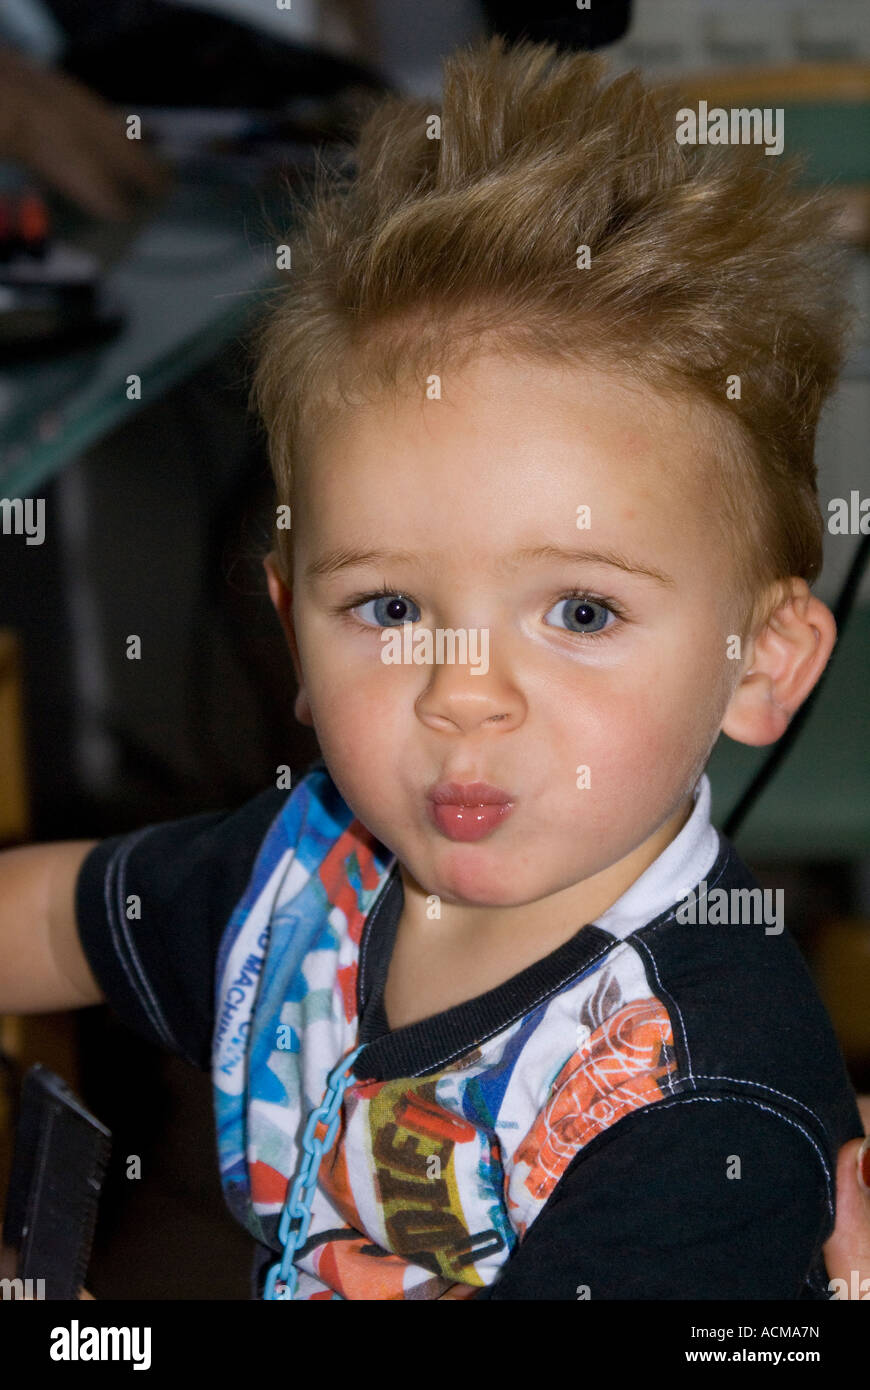 Kleines Blondes Baby Beim Friseur Stockfotografie Alamy